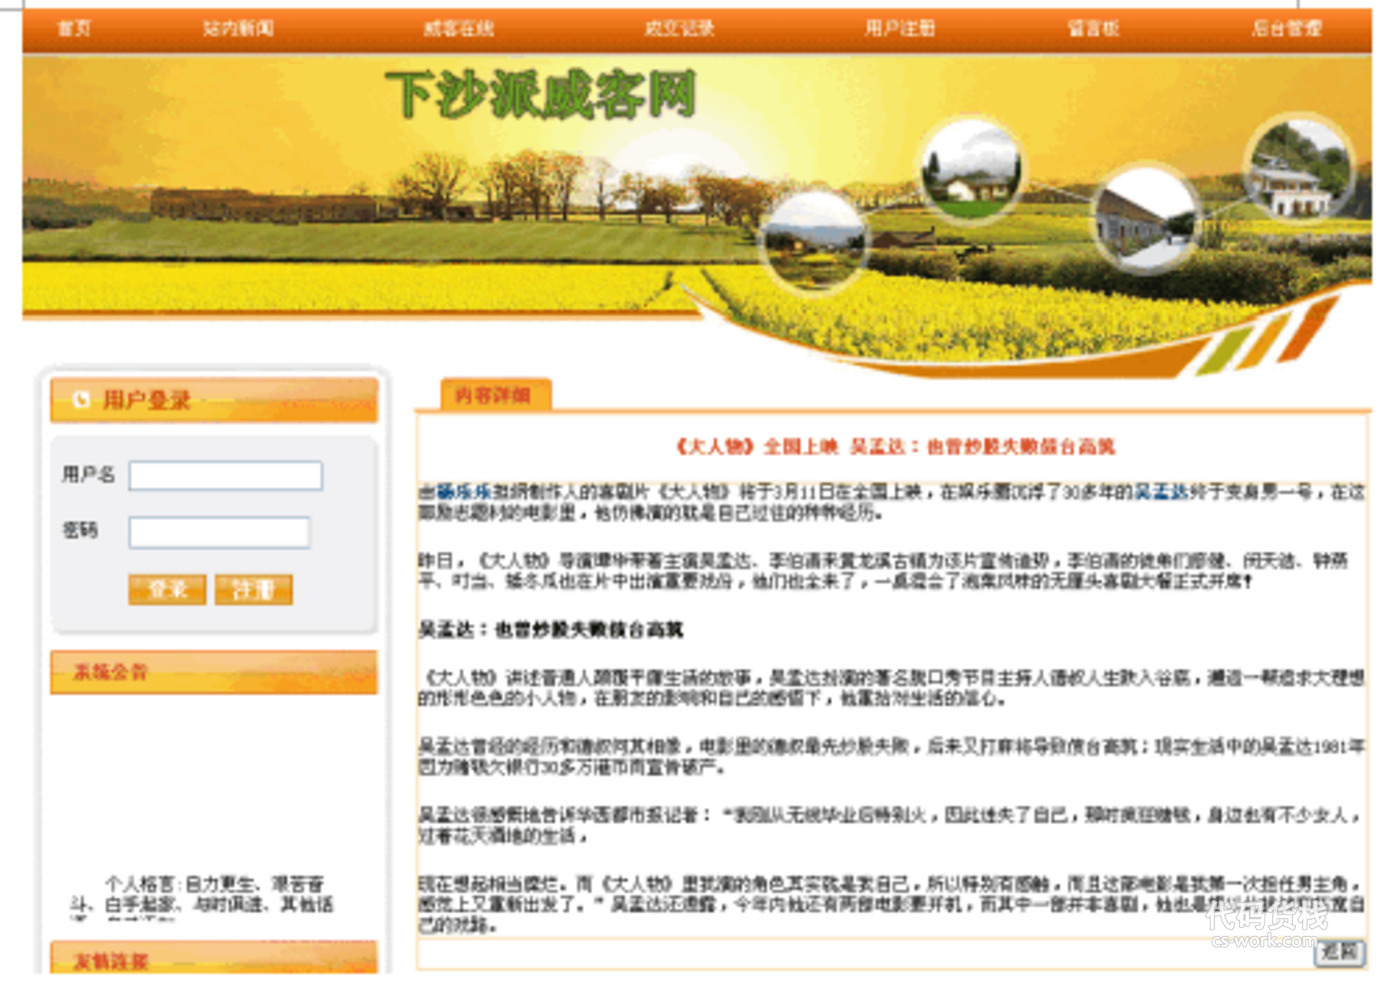 基于web的绿色农场租赁管理子系统的web网站设计与实现